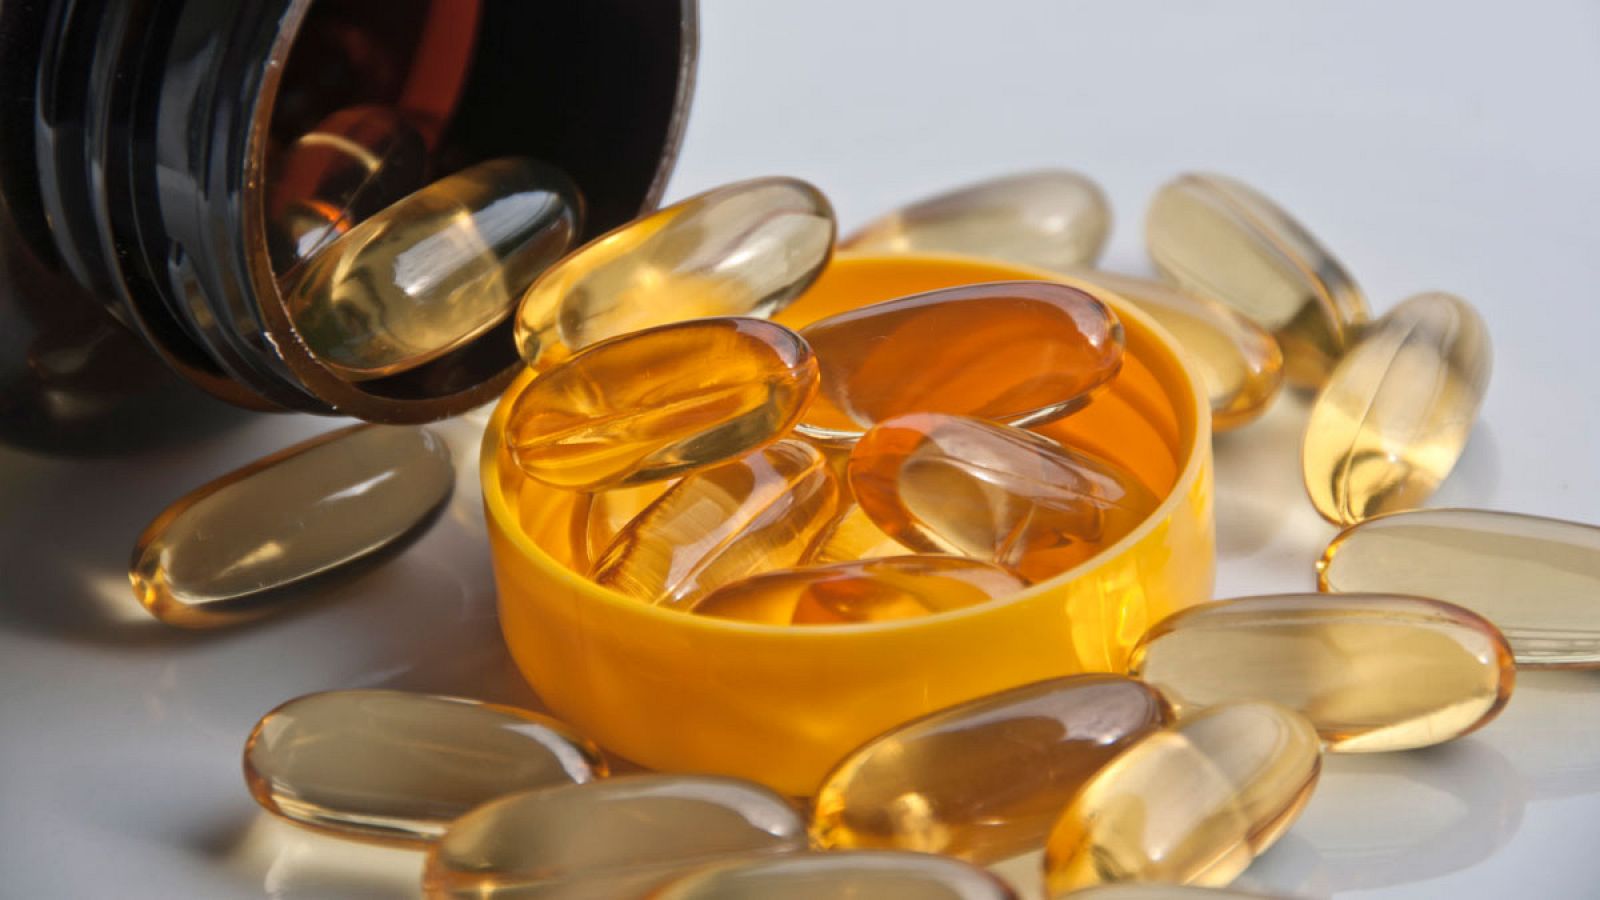 Los medicamentos con ácidos grasos omega-3 no son efectivos para prevenir más problemas cardiovasculares, según estudios de la UE.